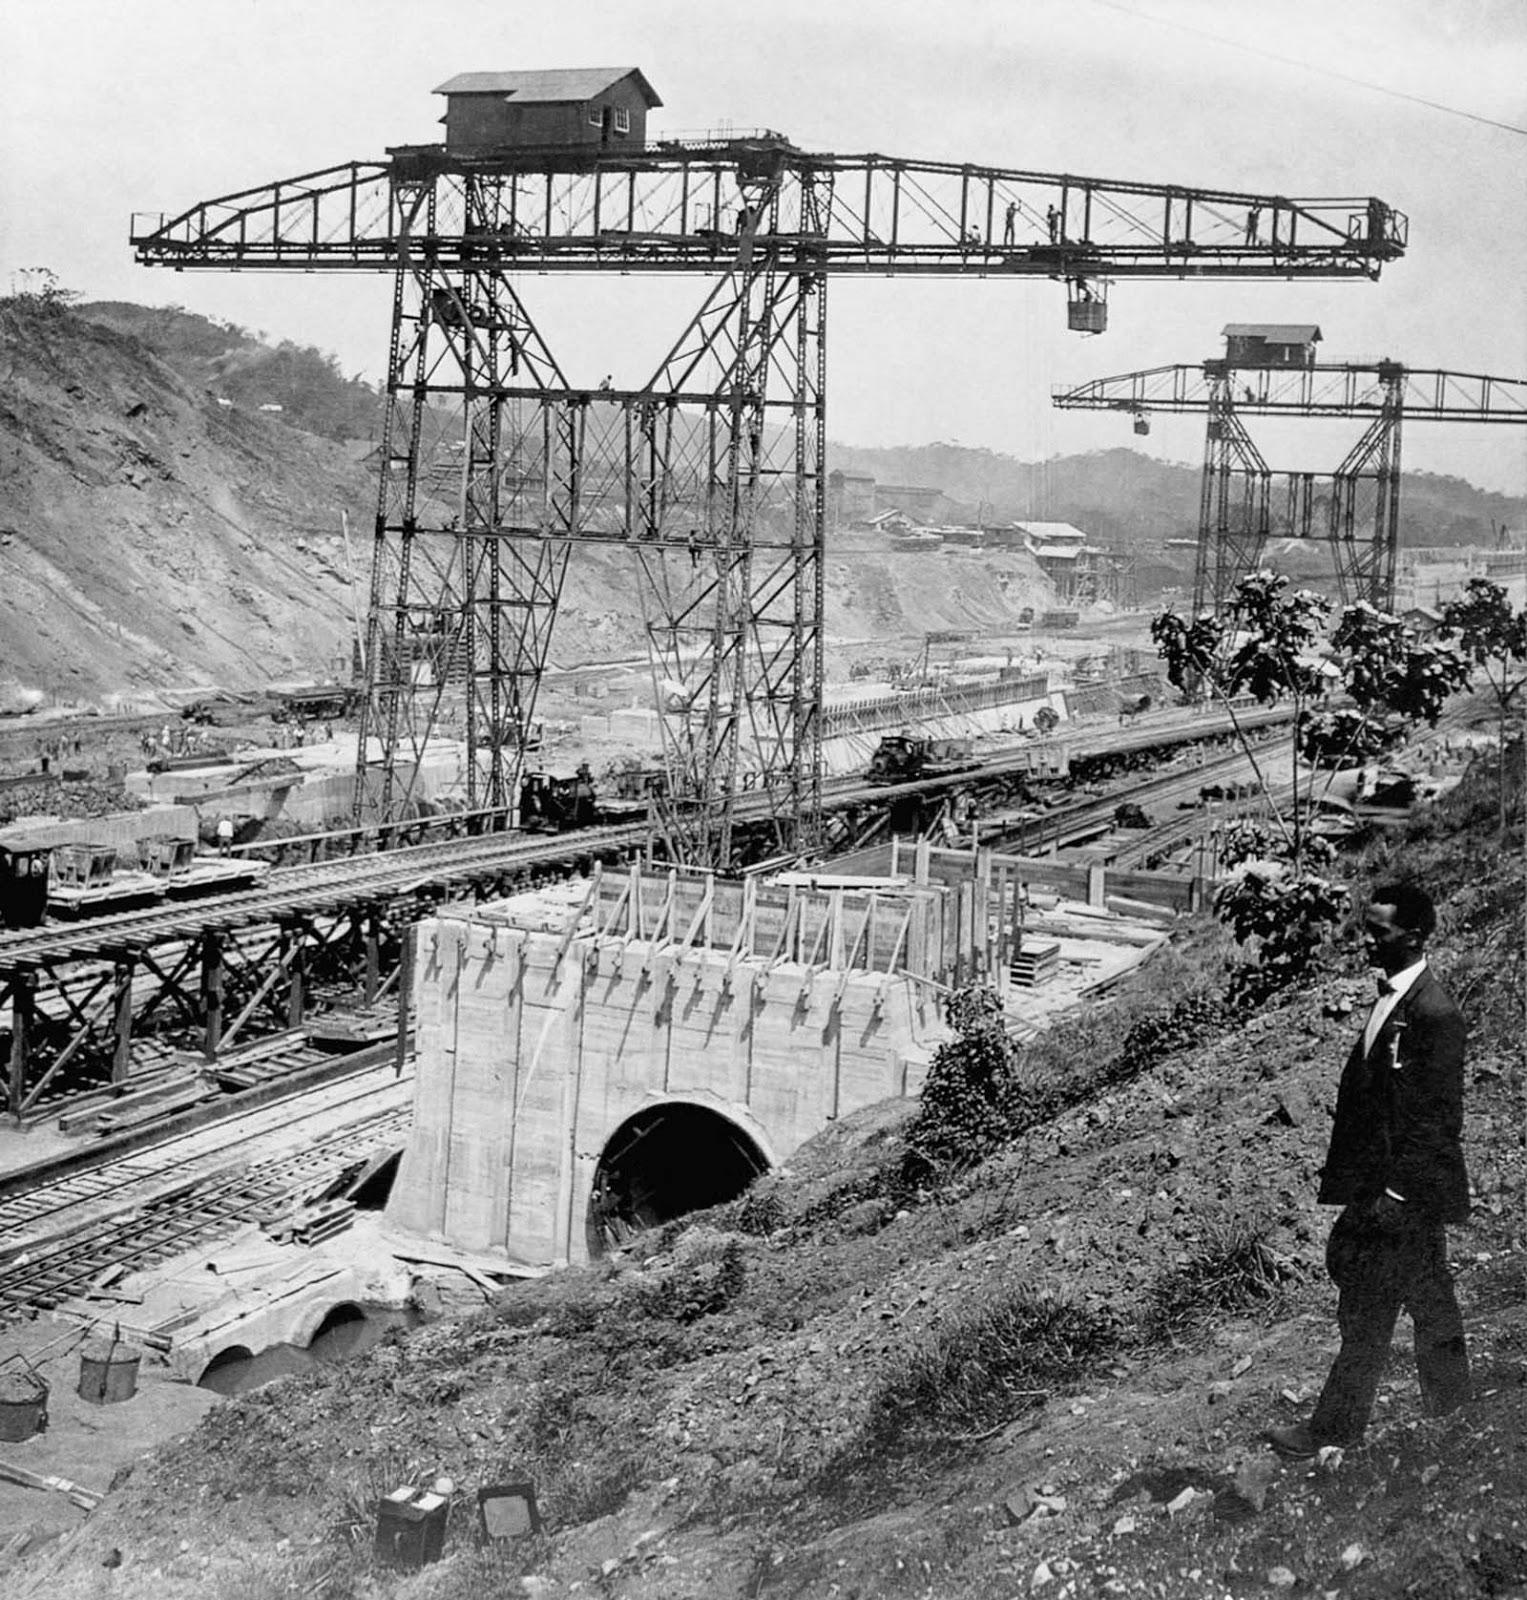 La construction du canal de Panama en images rares, 1881-1914